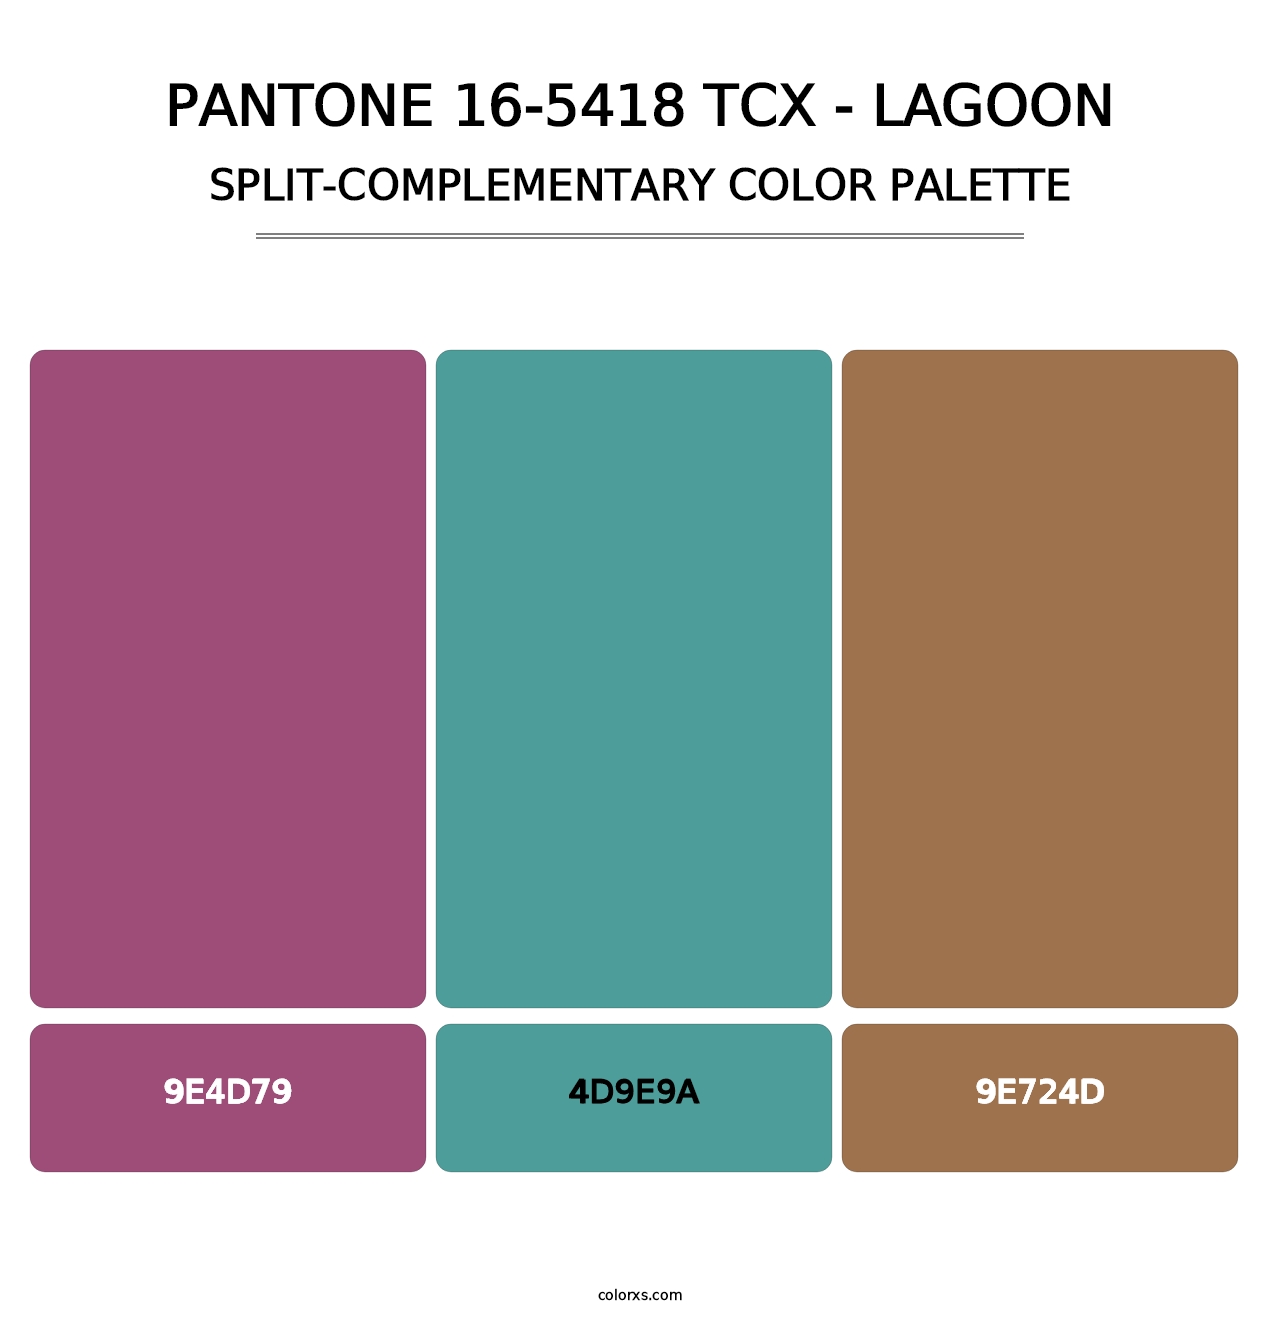 PANTONE 16-5418 TCX - Lagoon - Split-Complementary Color Palette